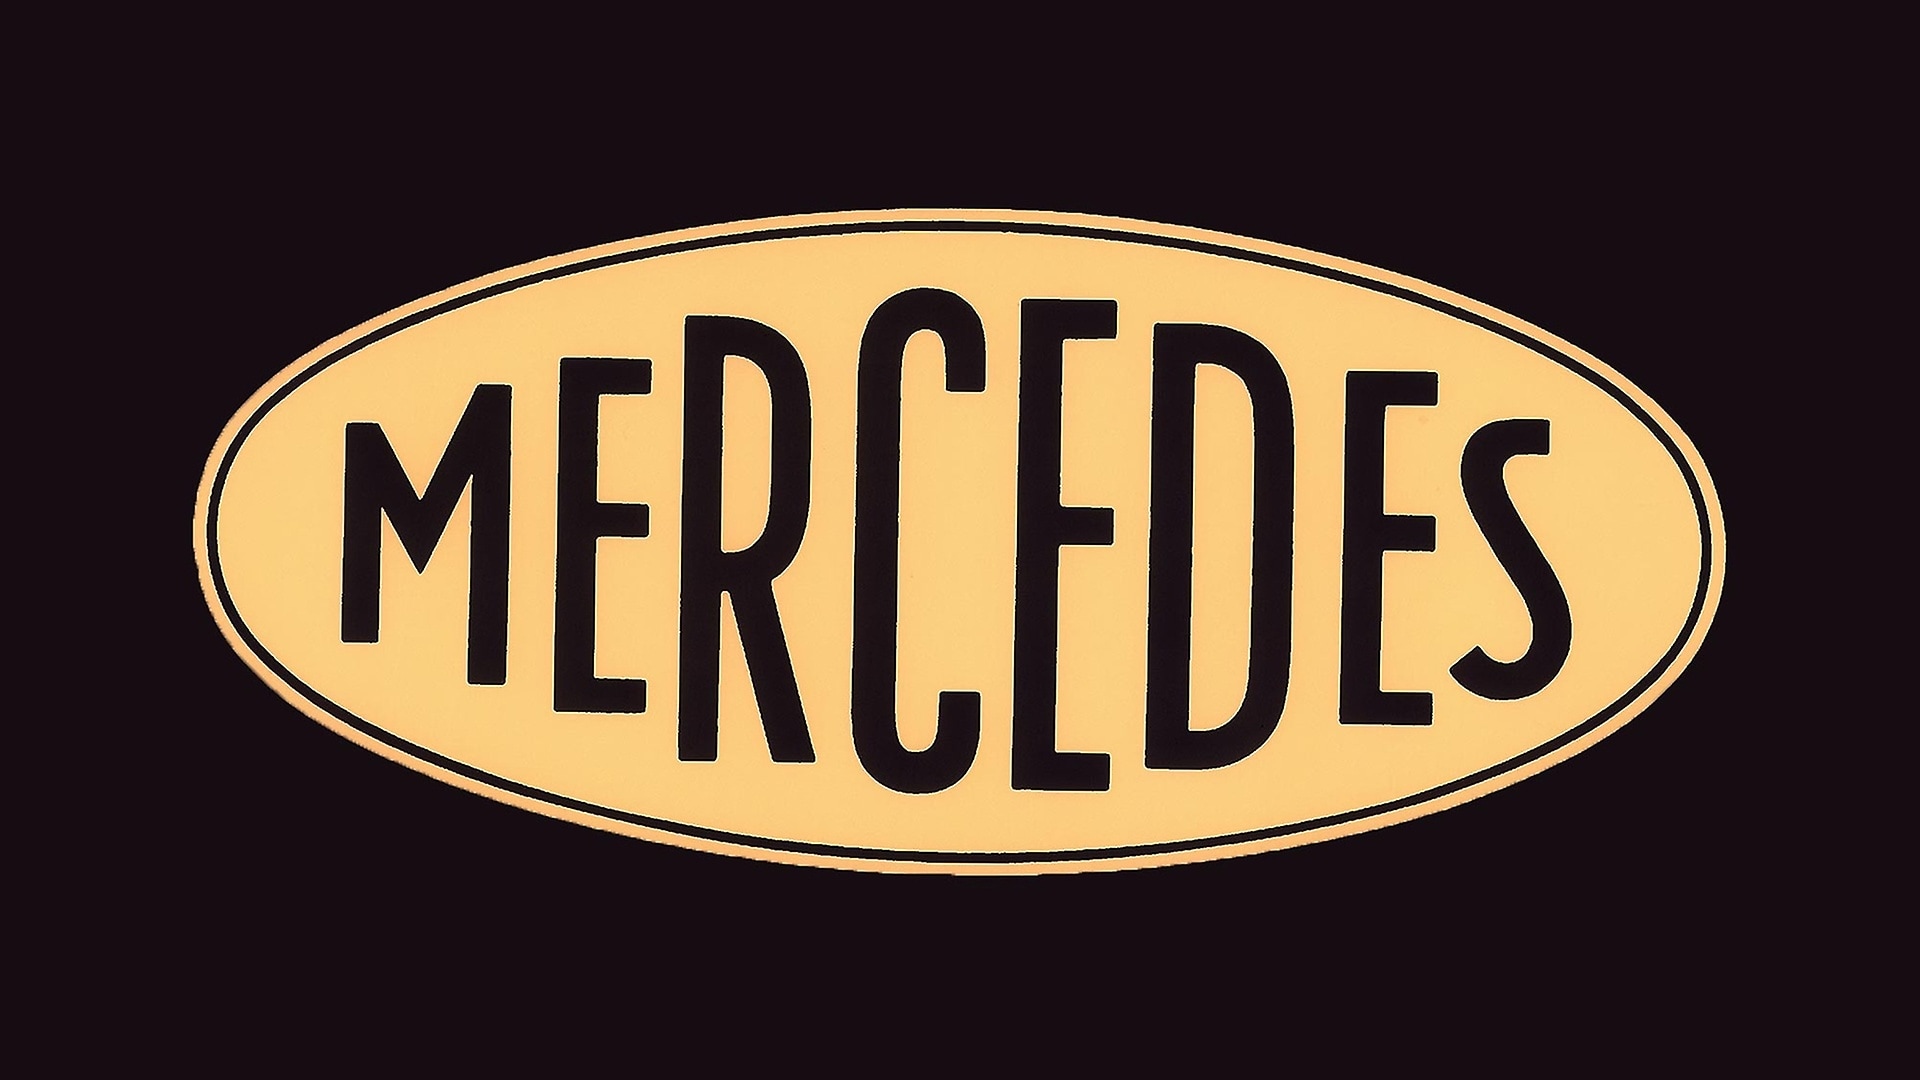 Das Warenzeichen "Mercedes" (Daimler-Motoren-Gesellschaft) wurde am 23. September 1902 gesetzlich geschützt.